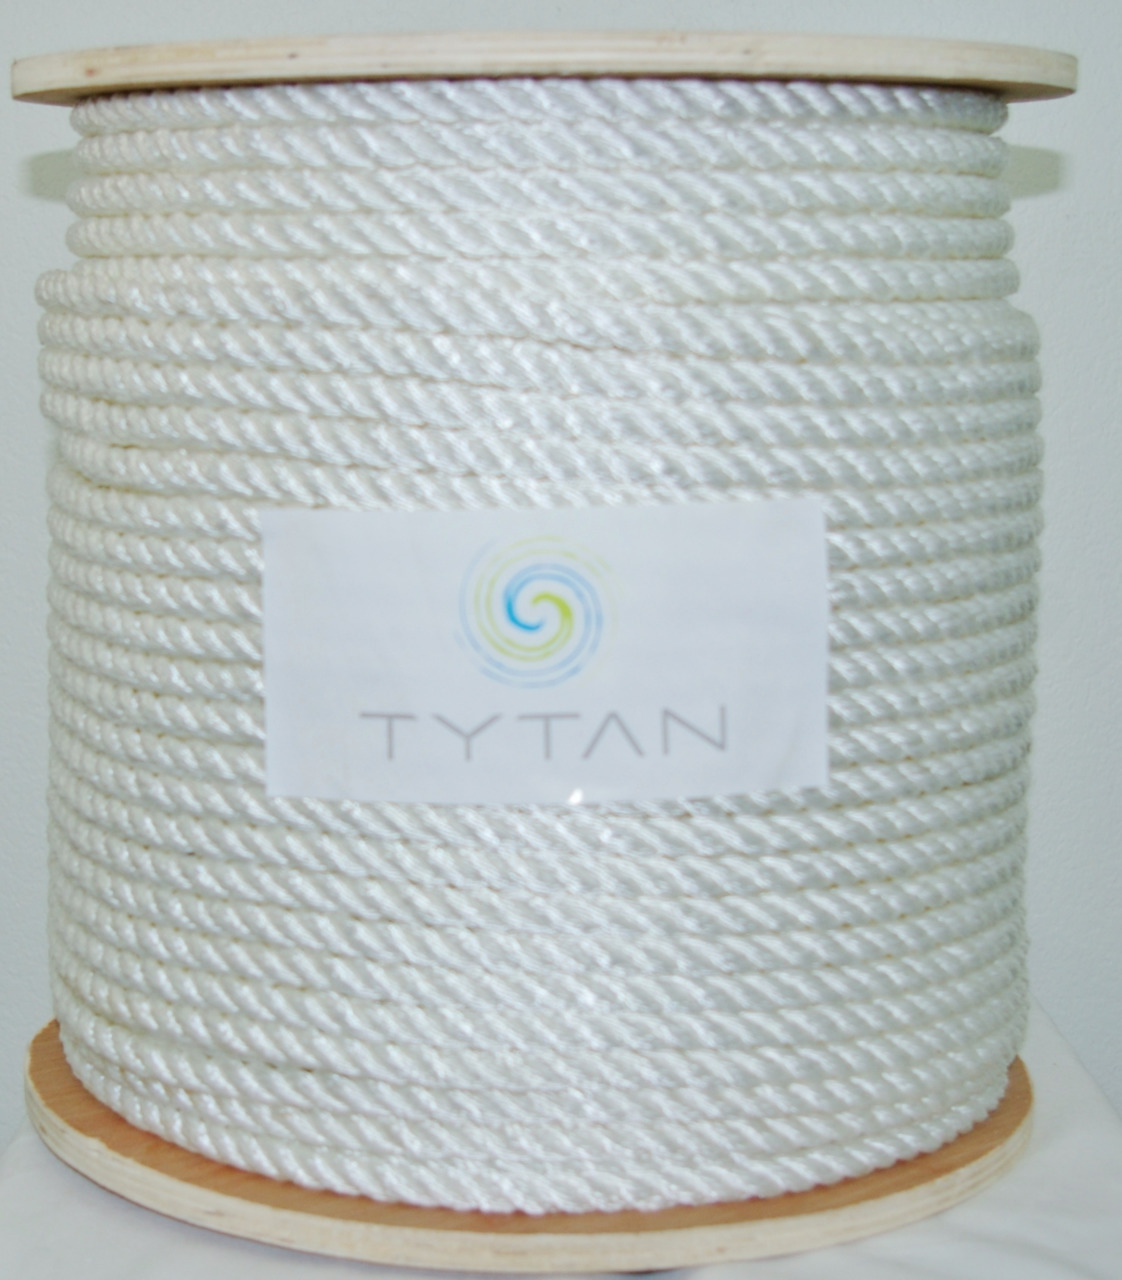 Tytan International 600' x 3/4 White Nylon Rope